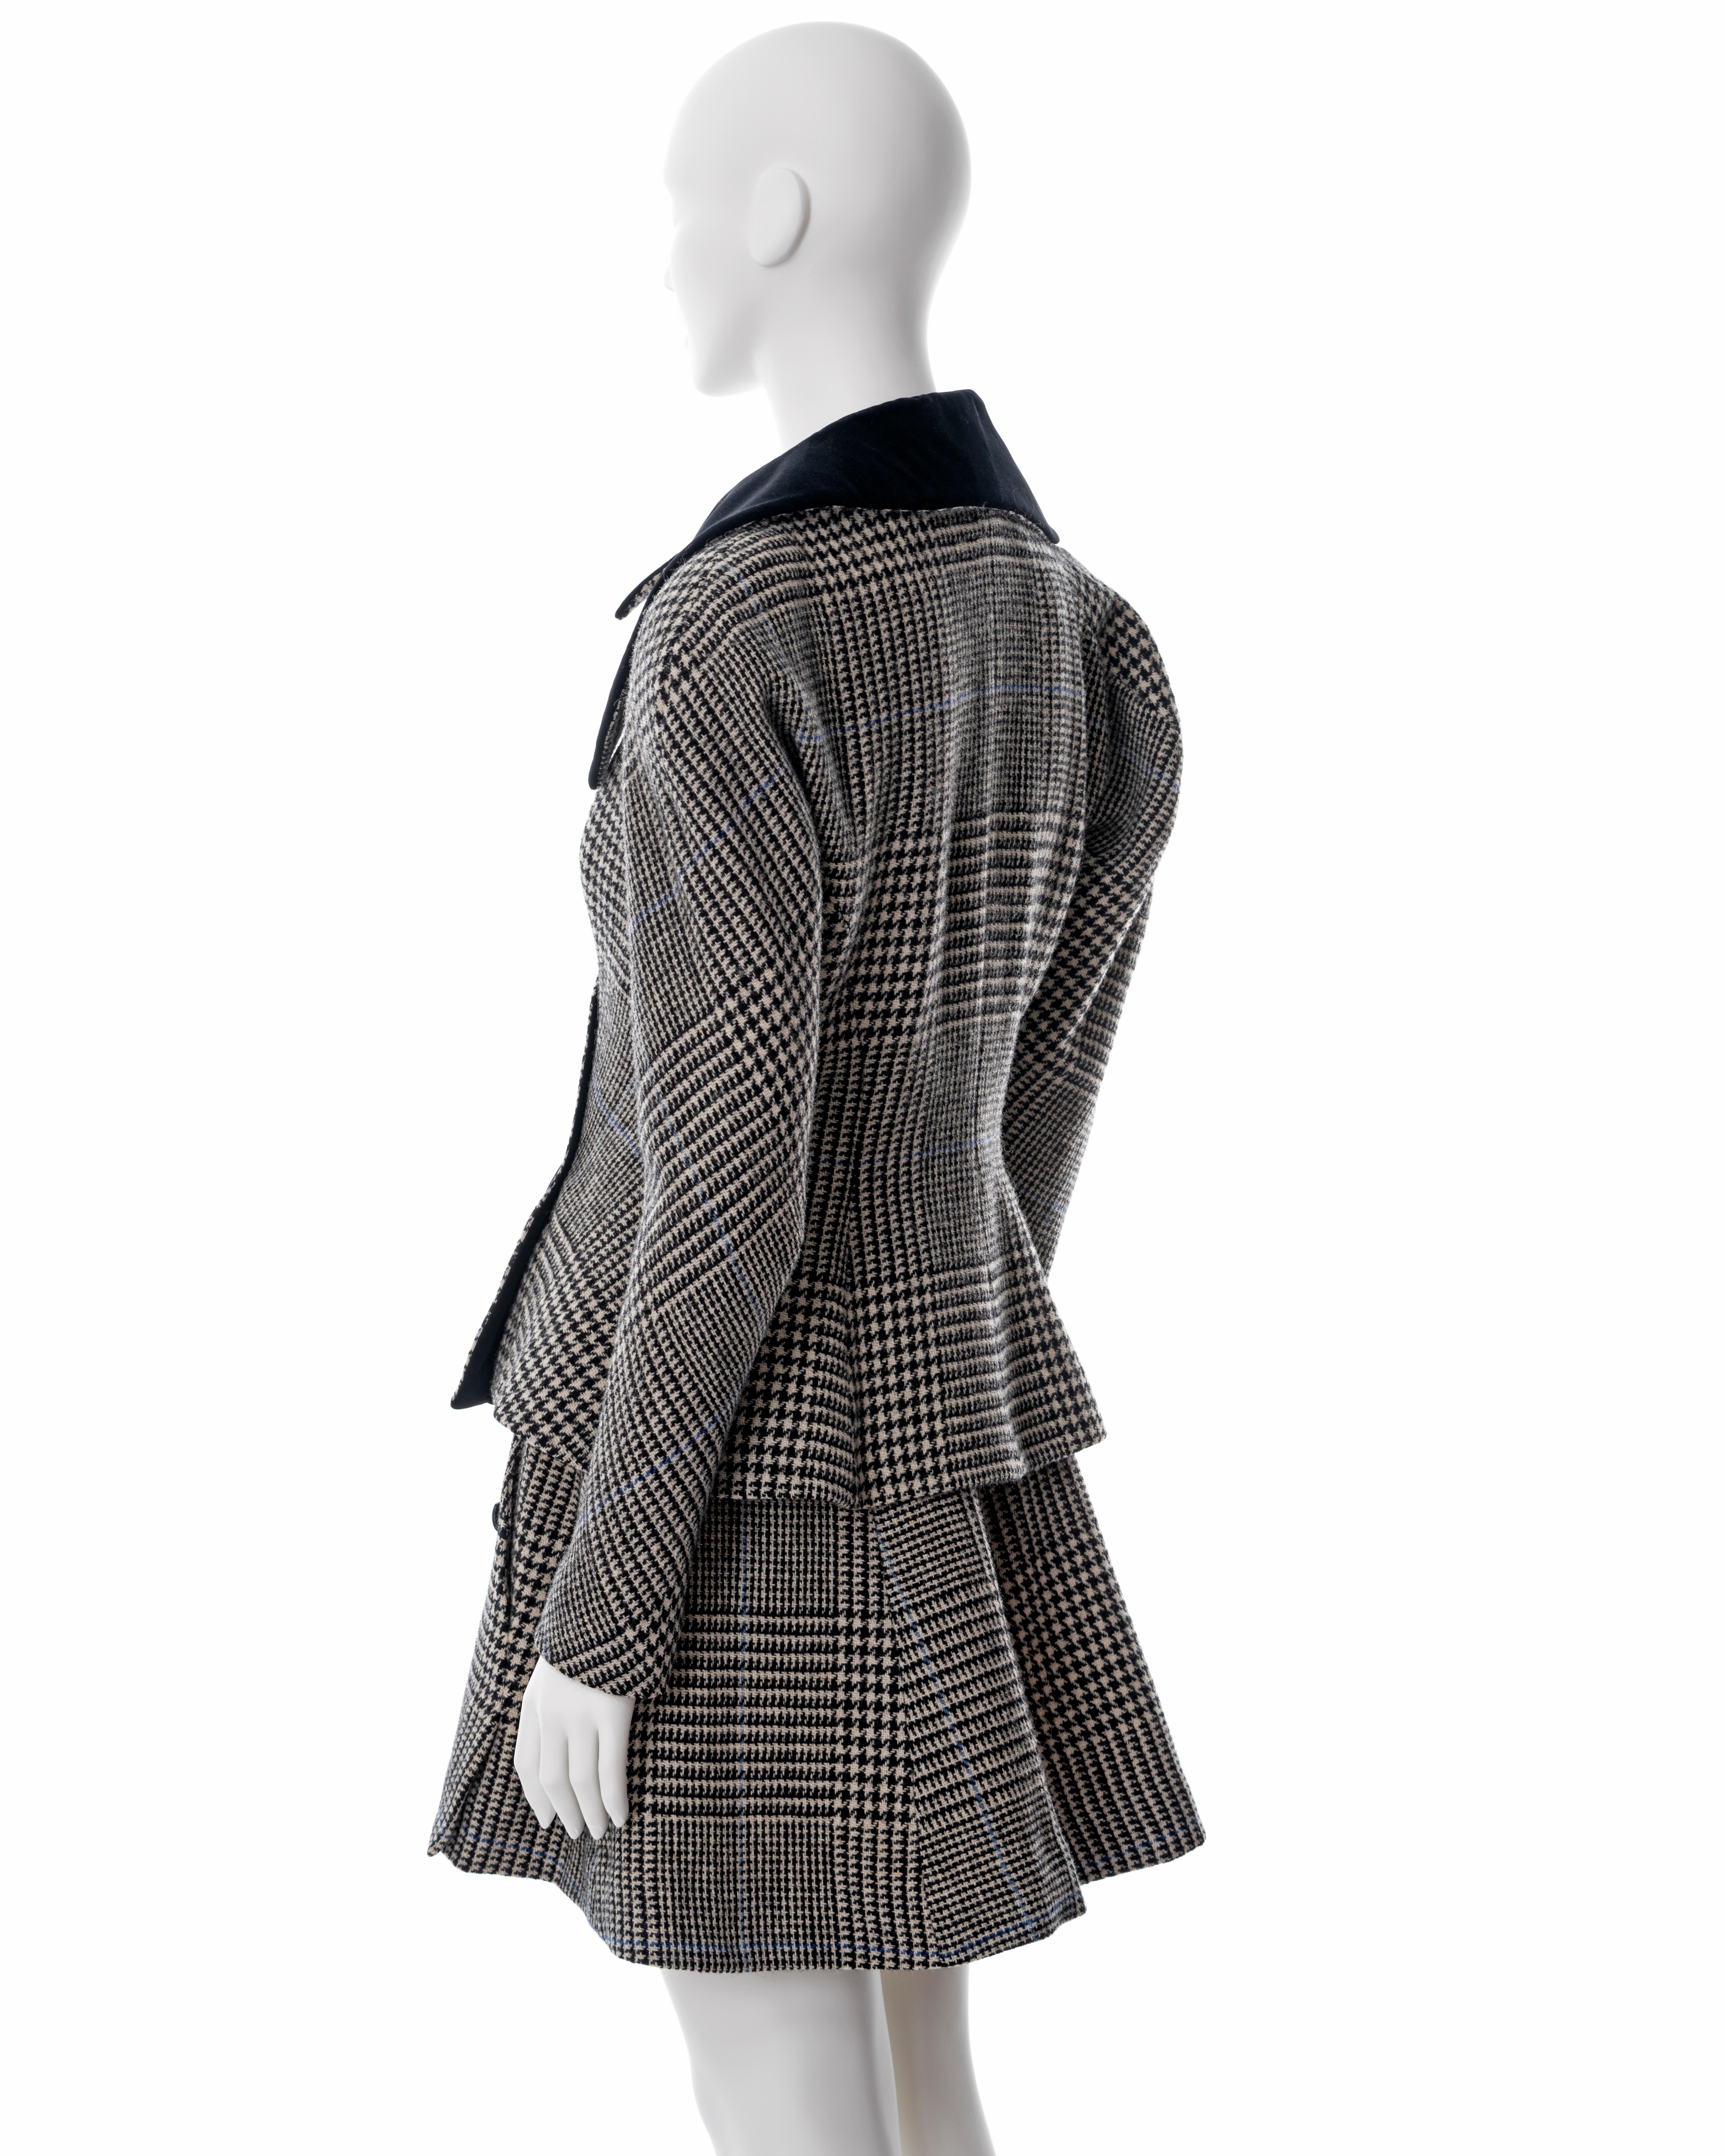 Vivienne Westwood grey houndstooth check tweed skirt suit, fw 1996 3